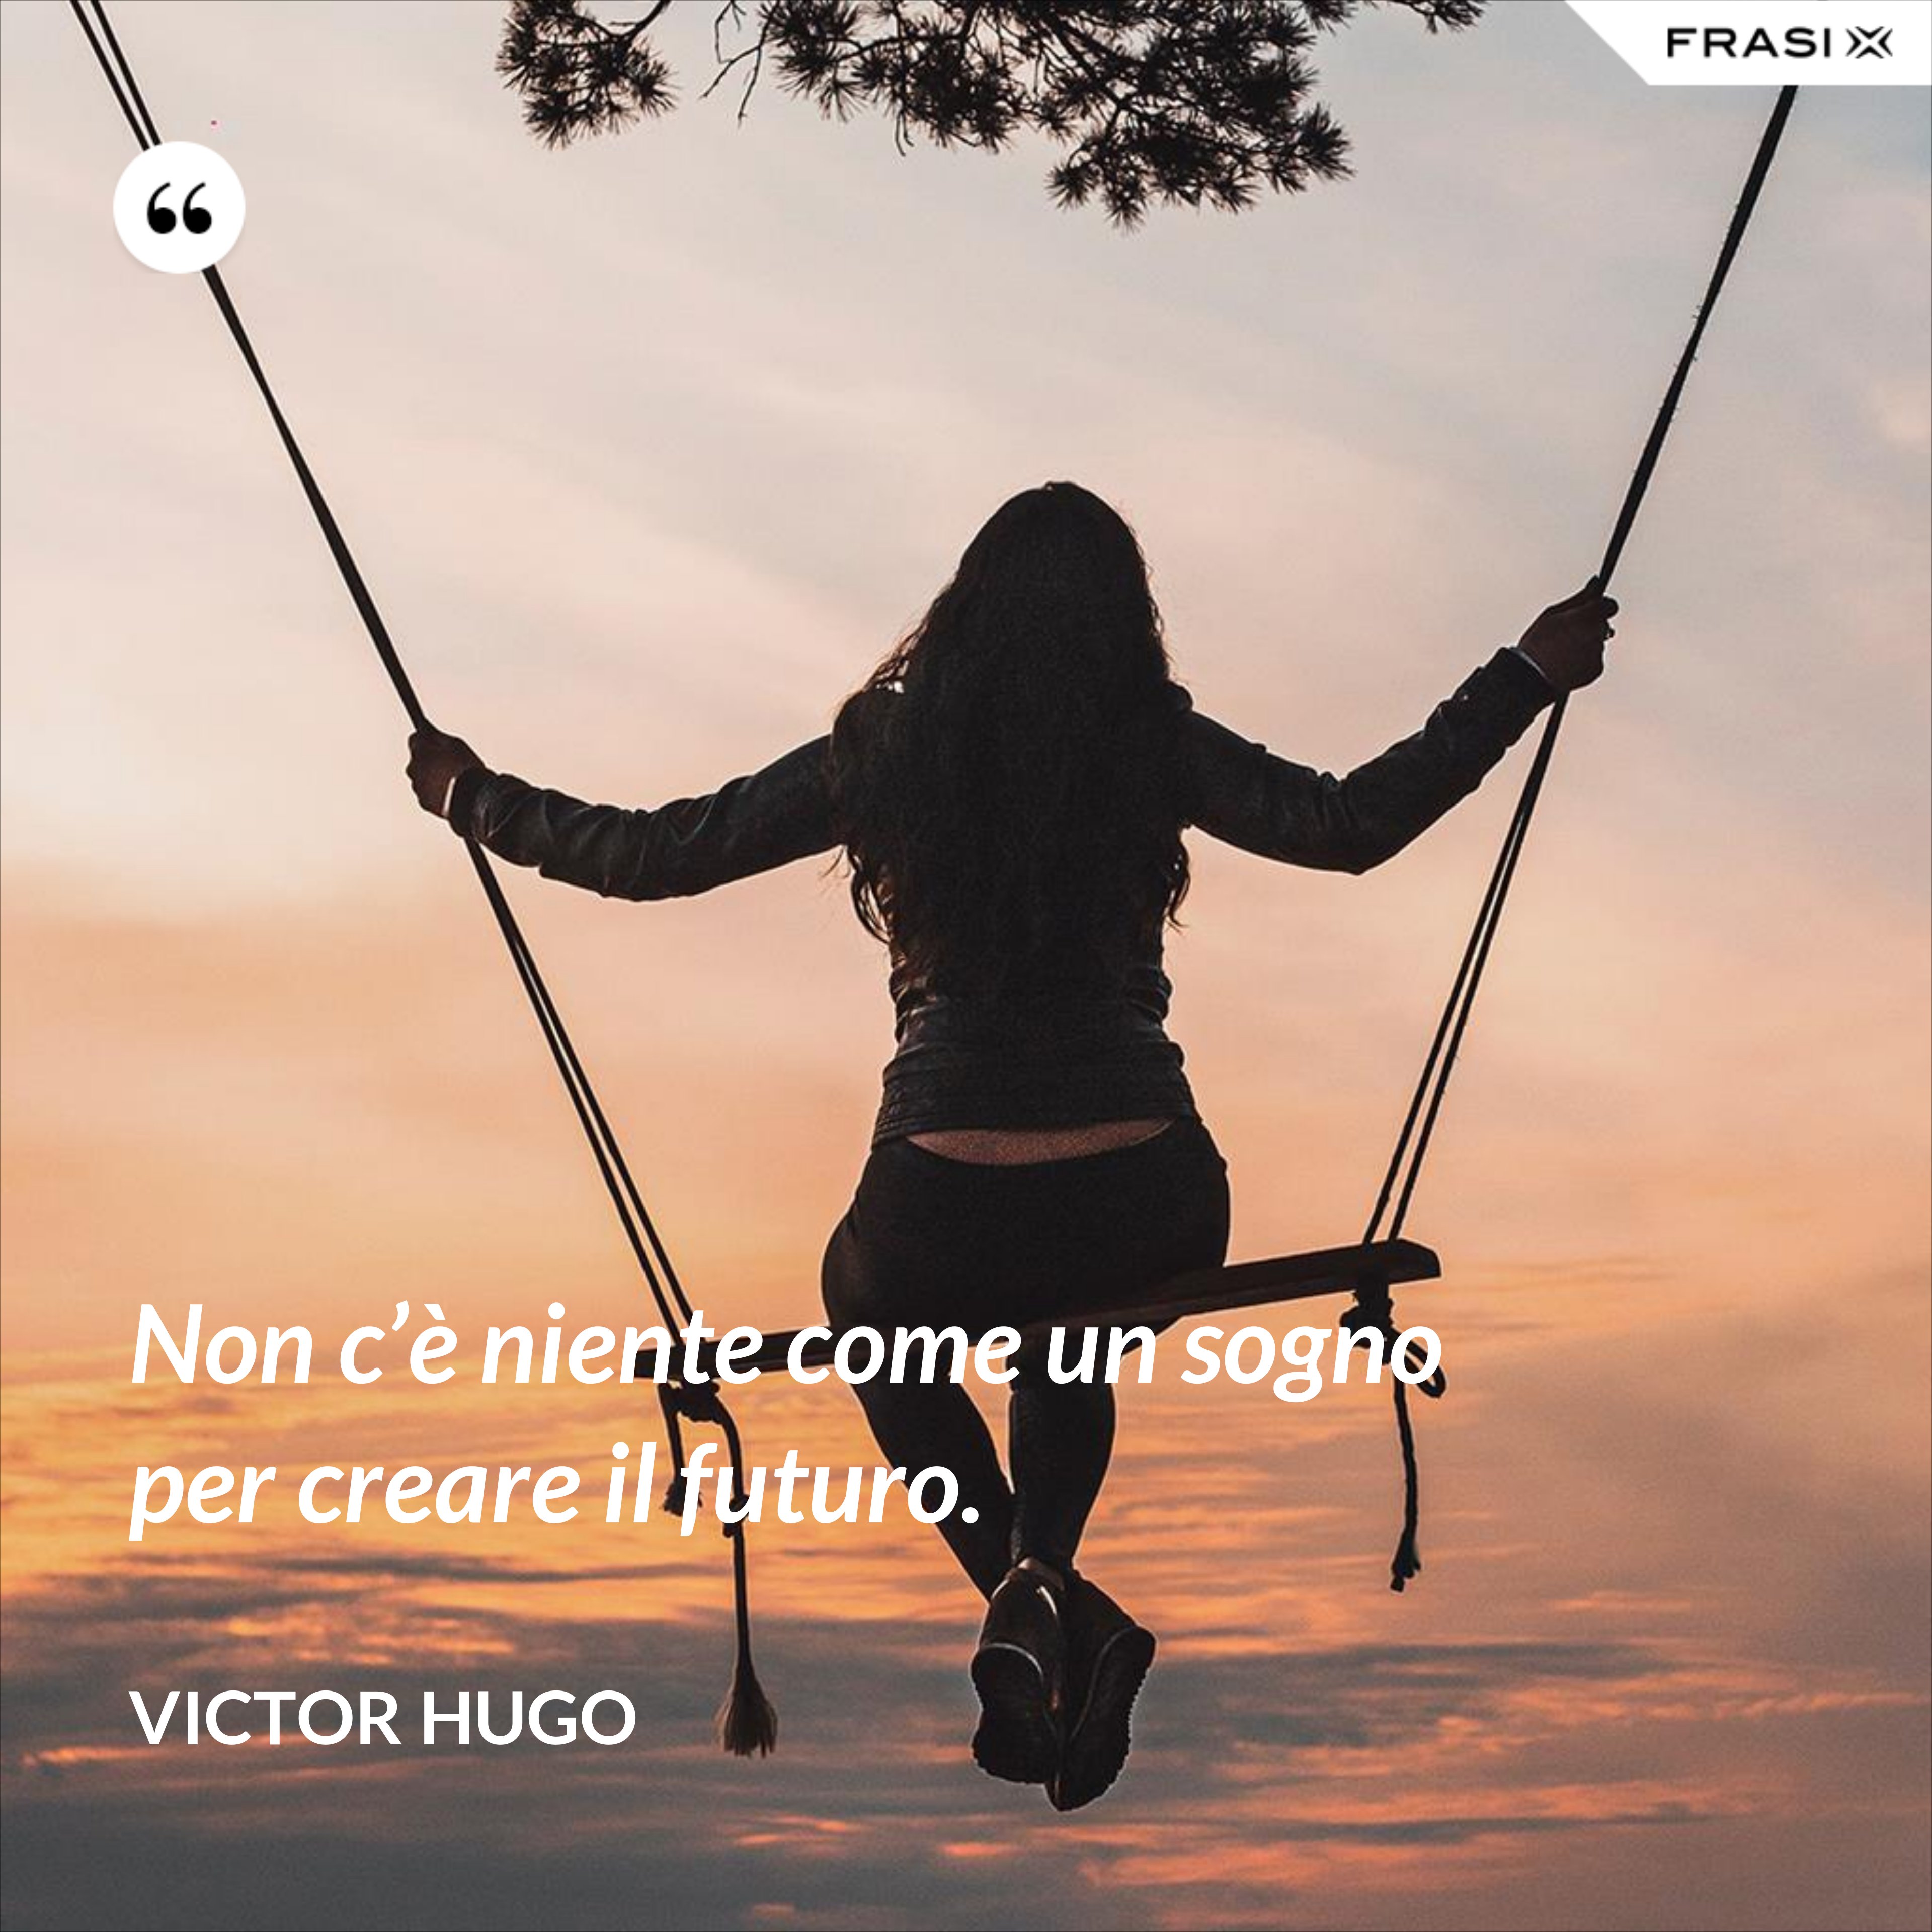 Non c’è niente come un sogno per creare il futuro. - Victor Hugo